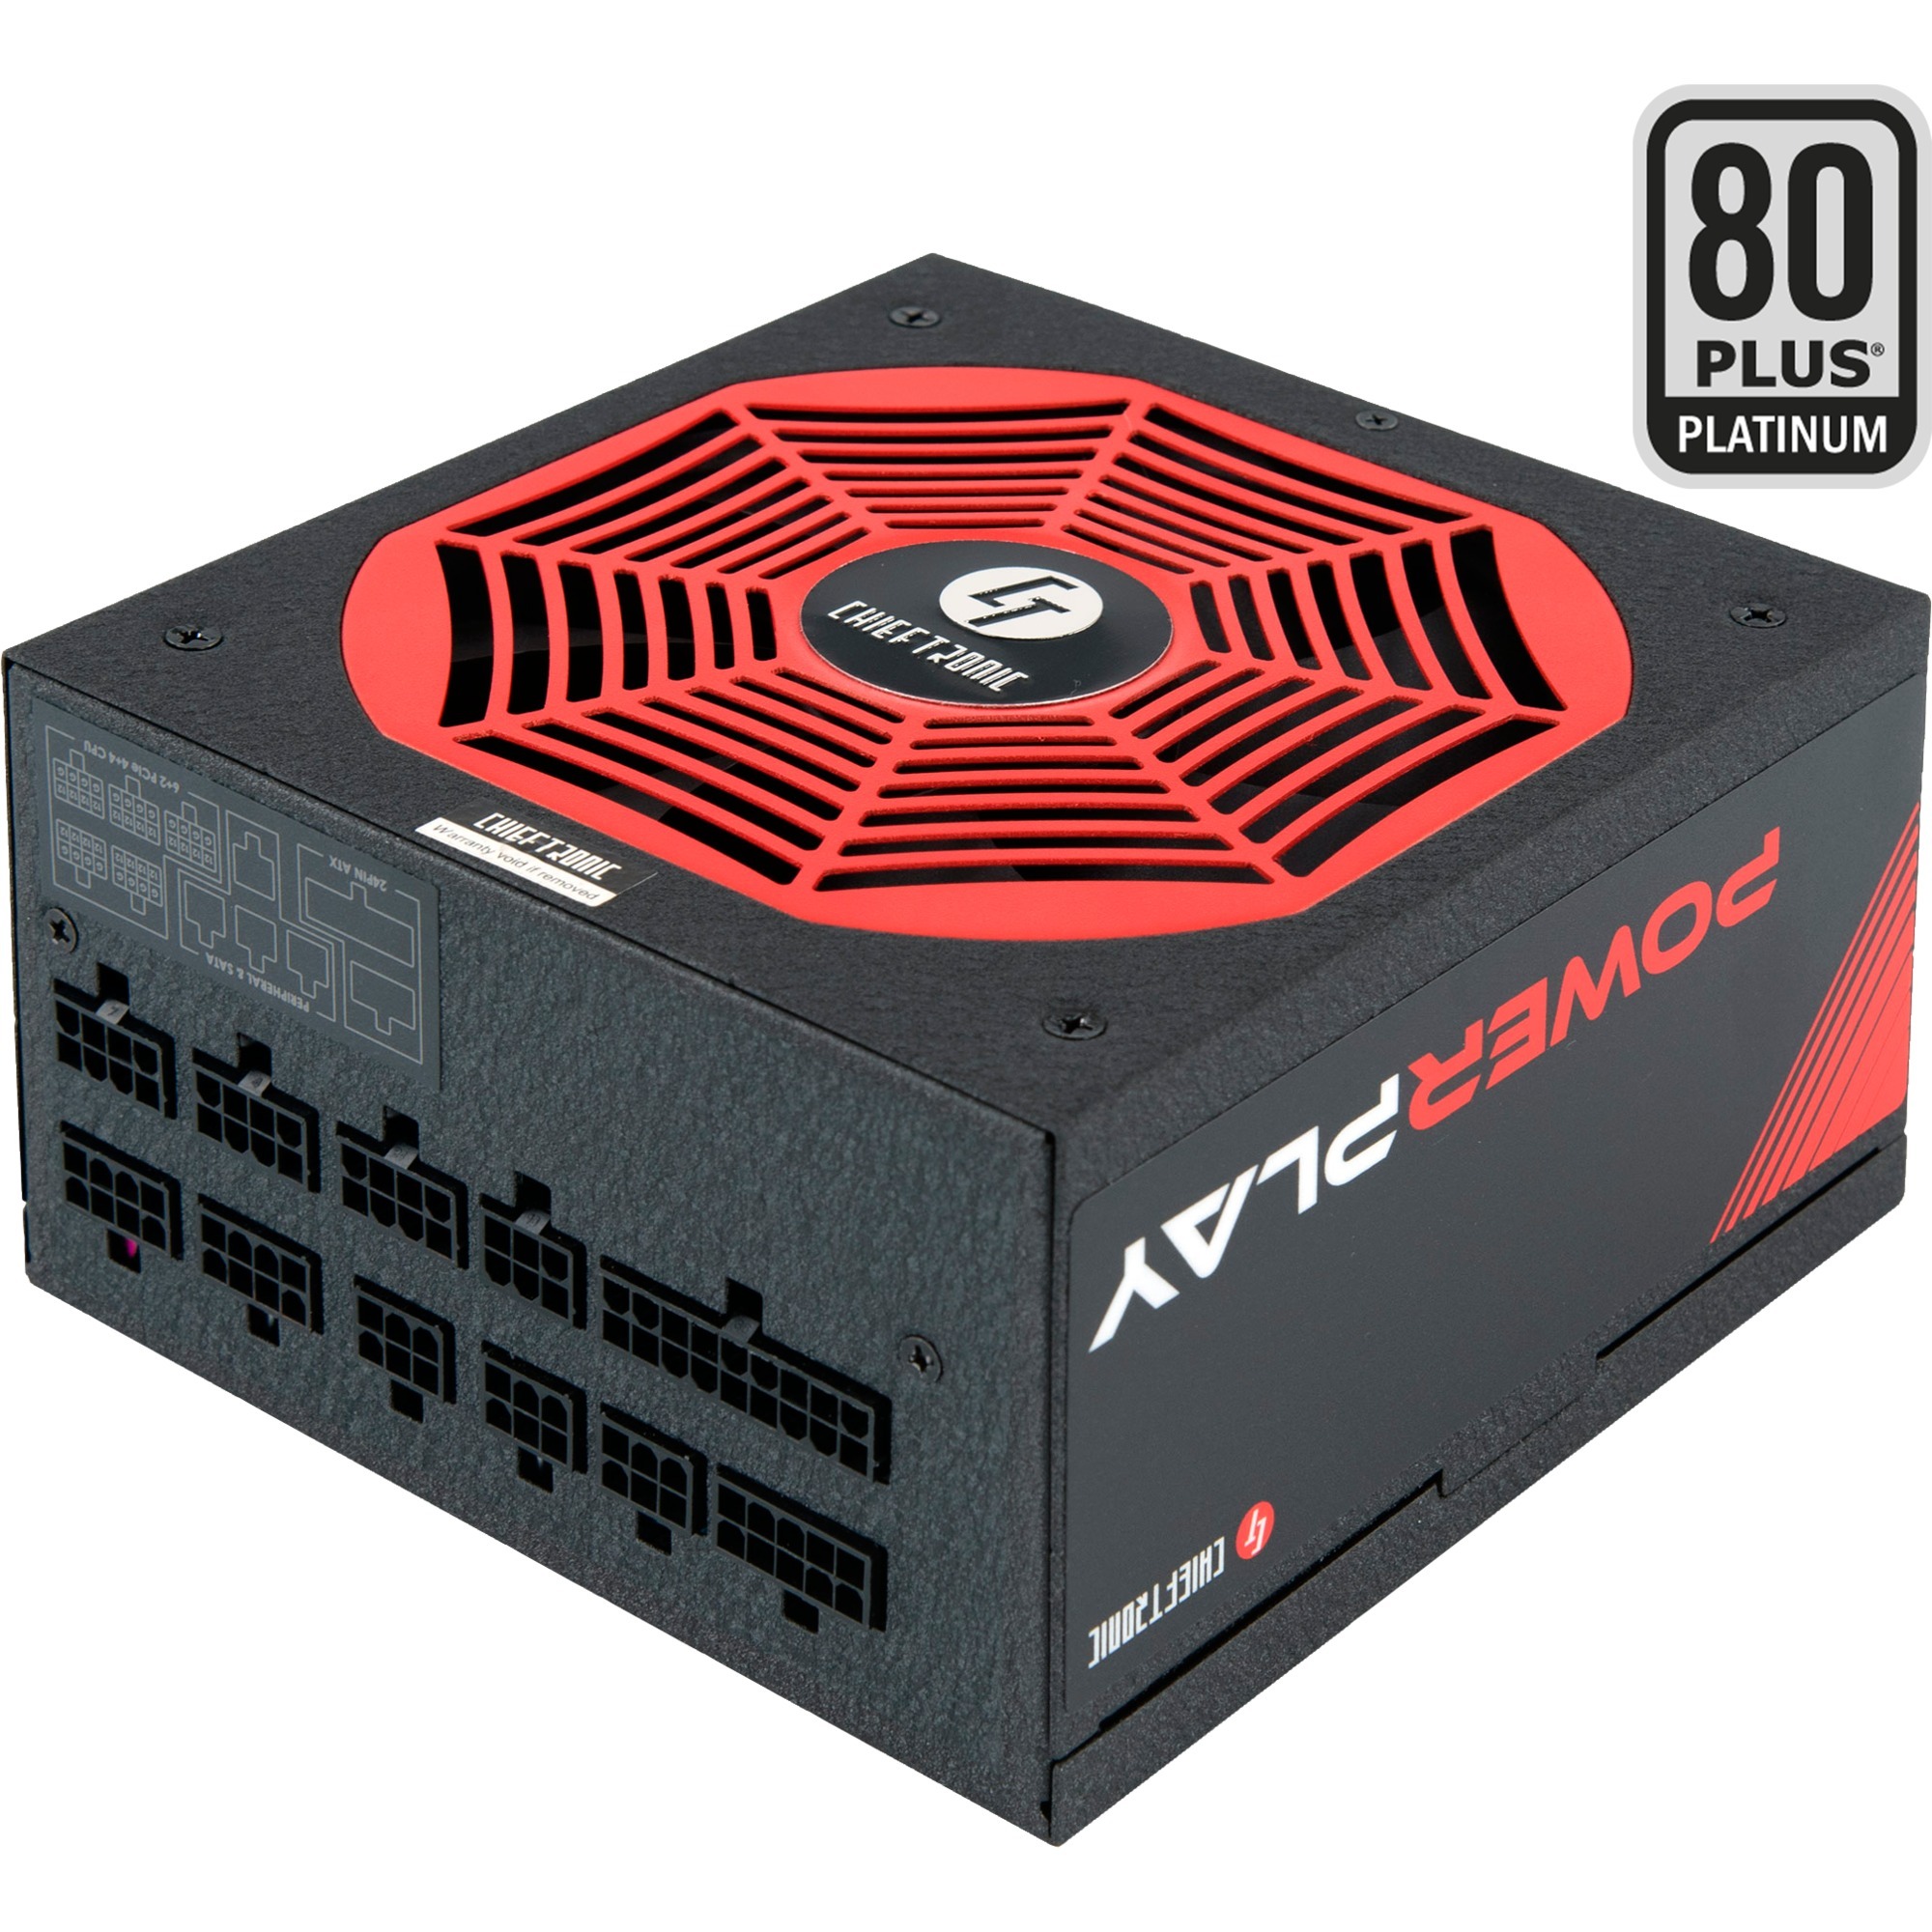 Image of Alternate - GPU-1050FC, PC-Netzteil online einkaufen bei Alternate